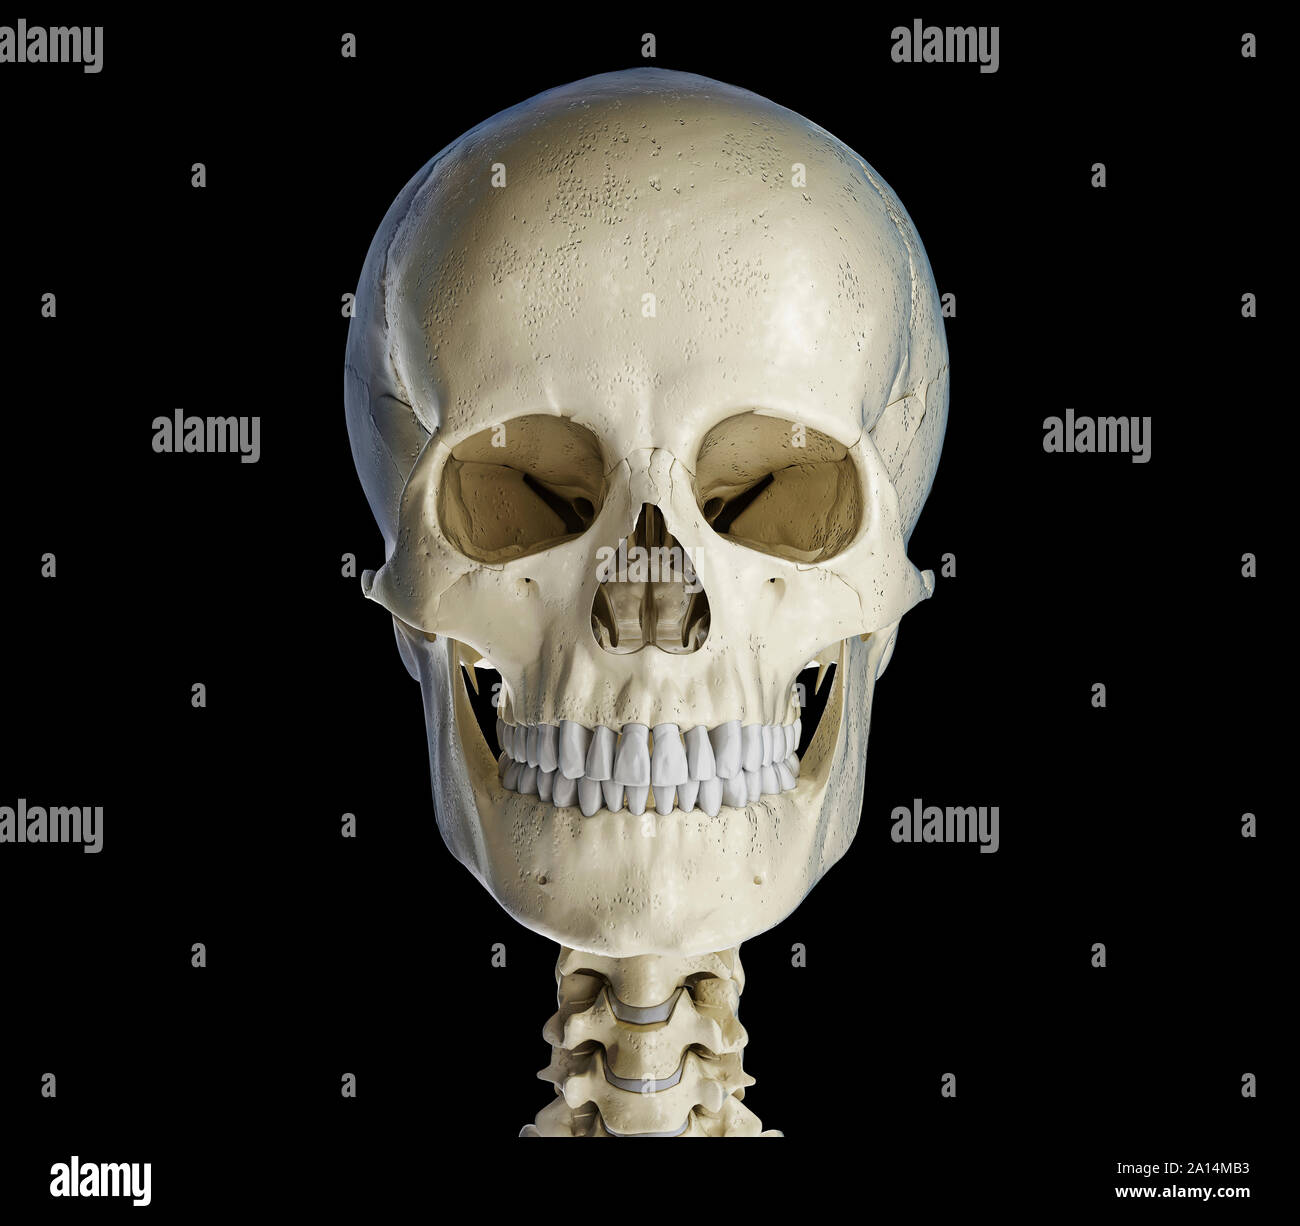 Crâne humain du point de vue de l'avant, sur fond noir. Banque D'Images